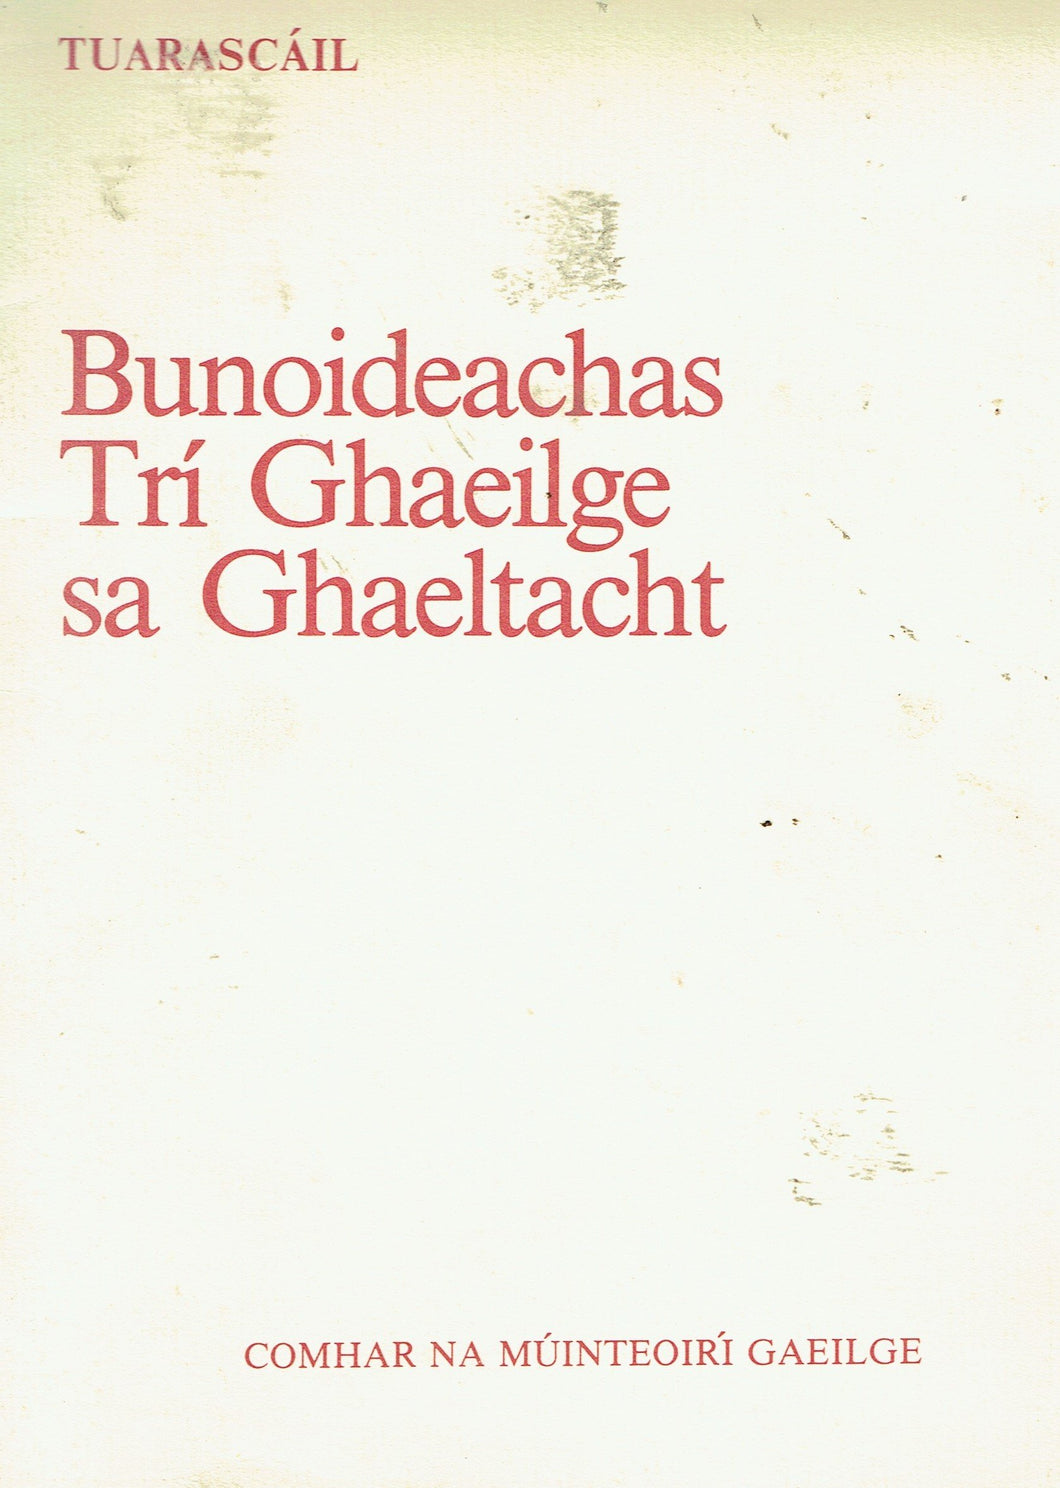 Tuarascáil: Bunoideachas Trí Ghaeilge sa Ghaeltacht